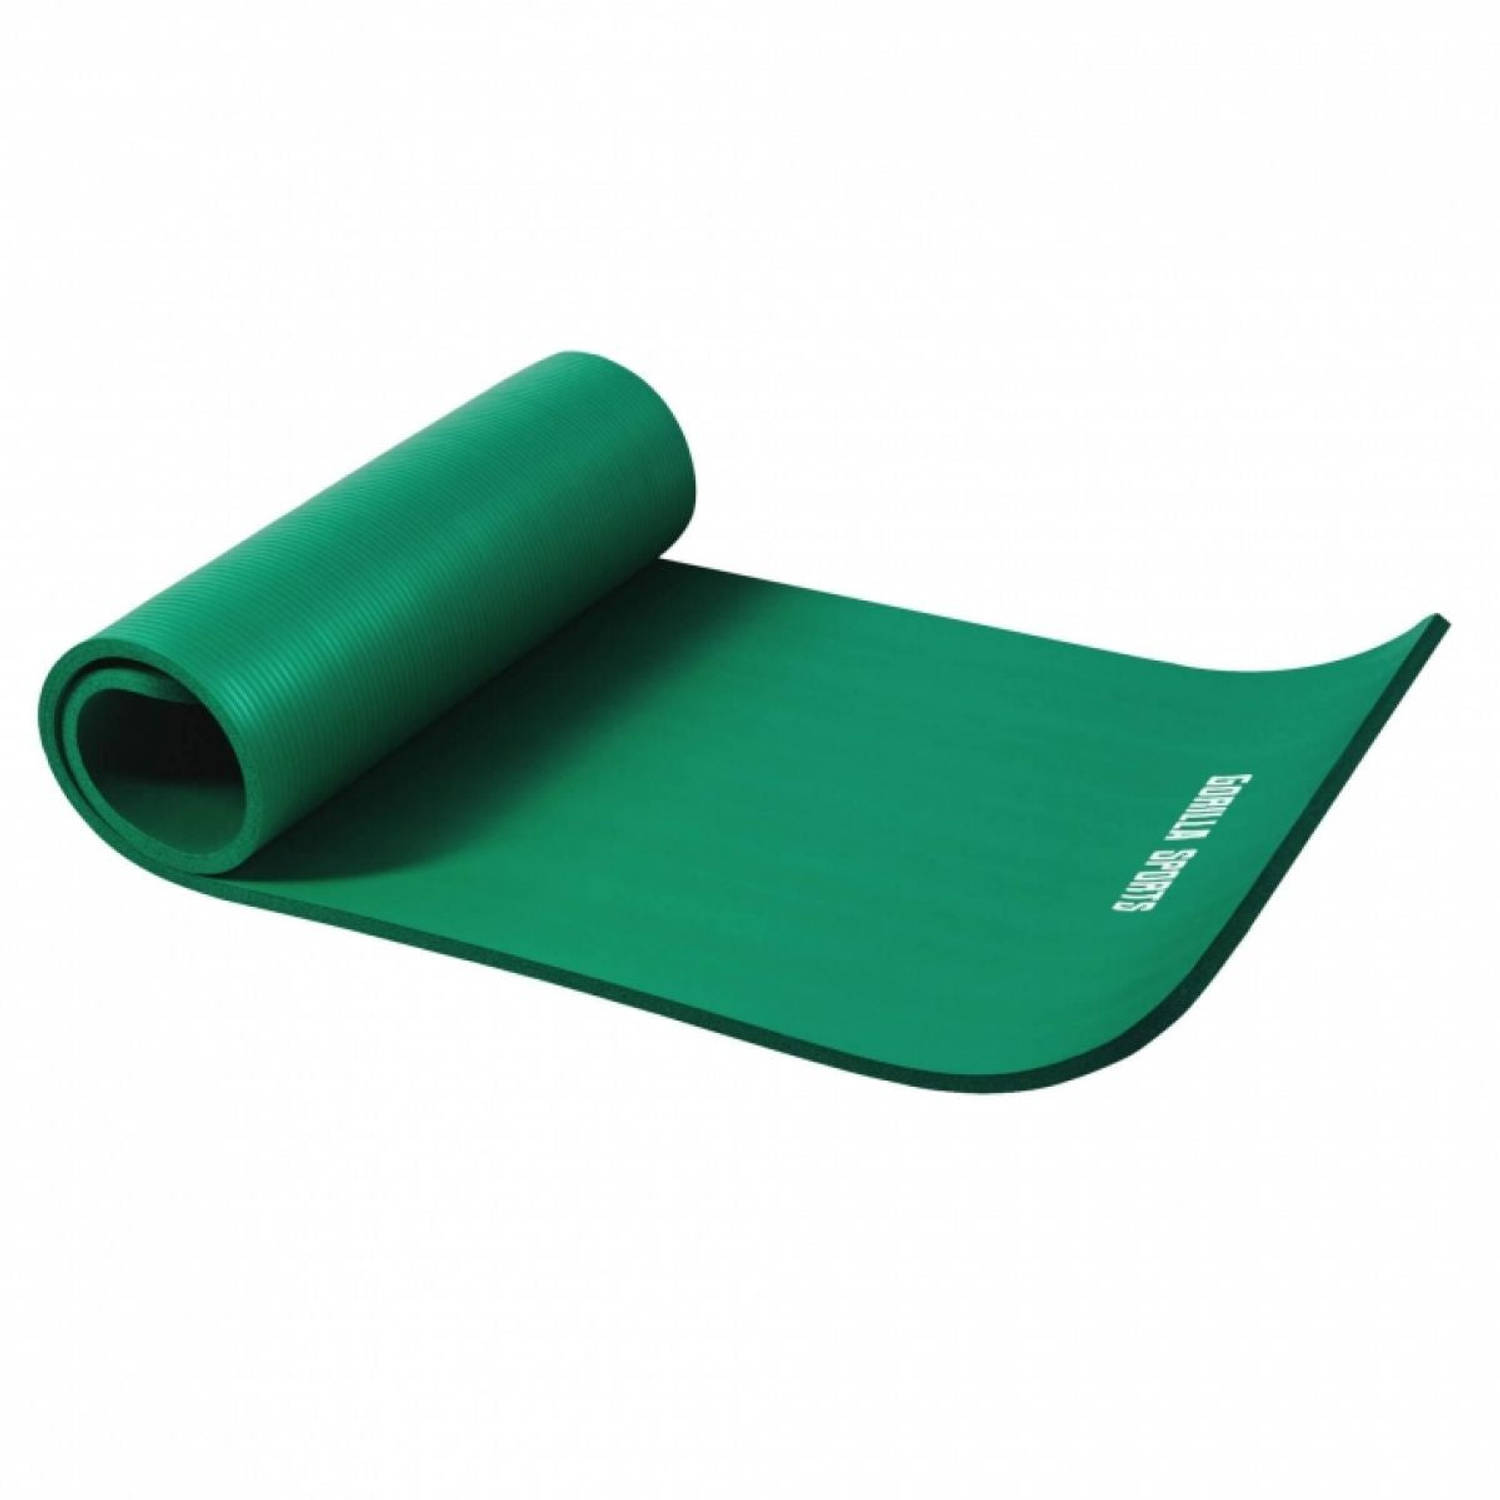 Yogamat Deluxe (190 x 100 x 1,5 cm) groen